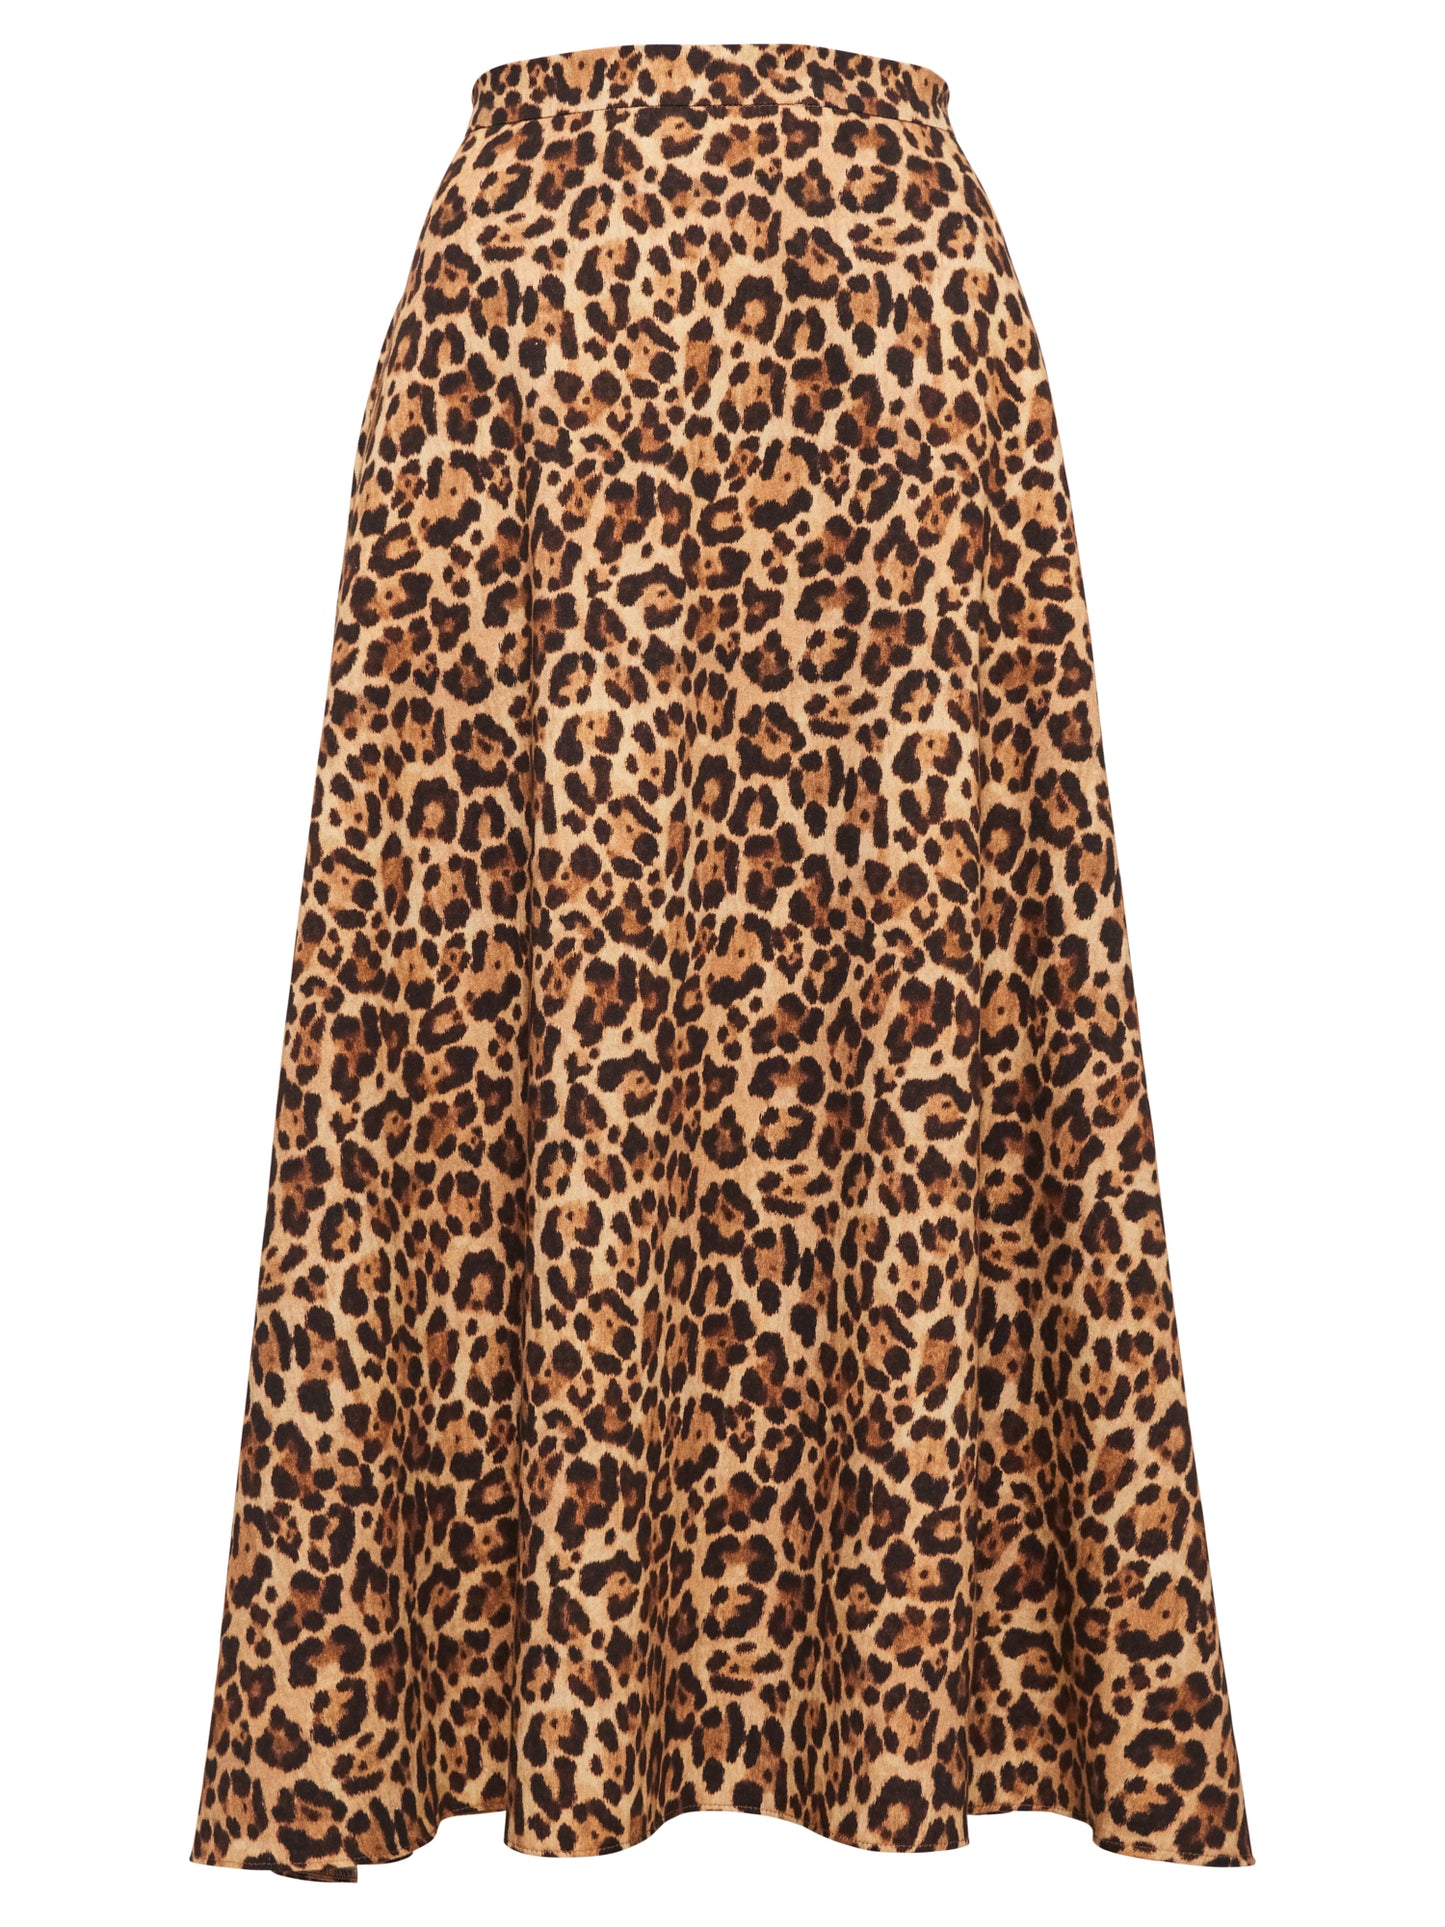 ADDITION - Easy Skirt leopard